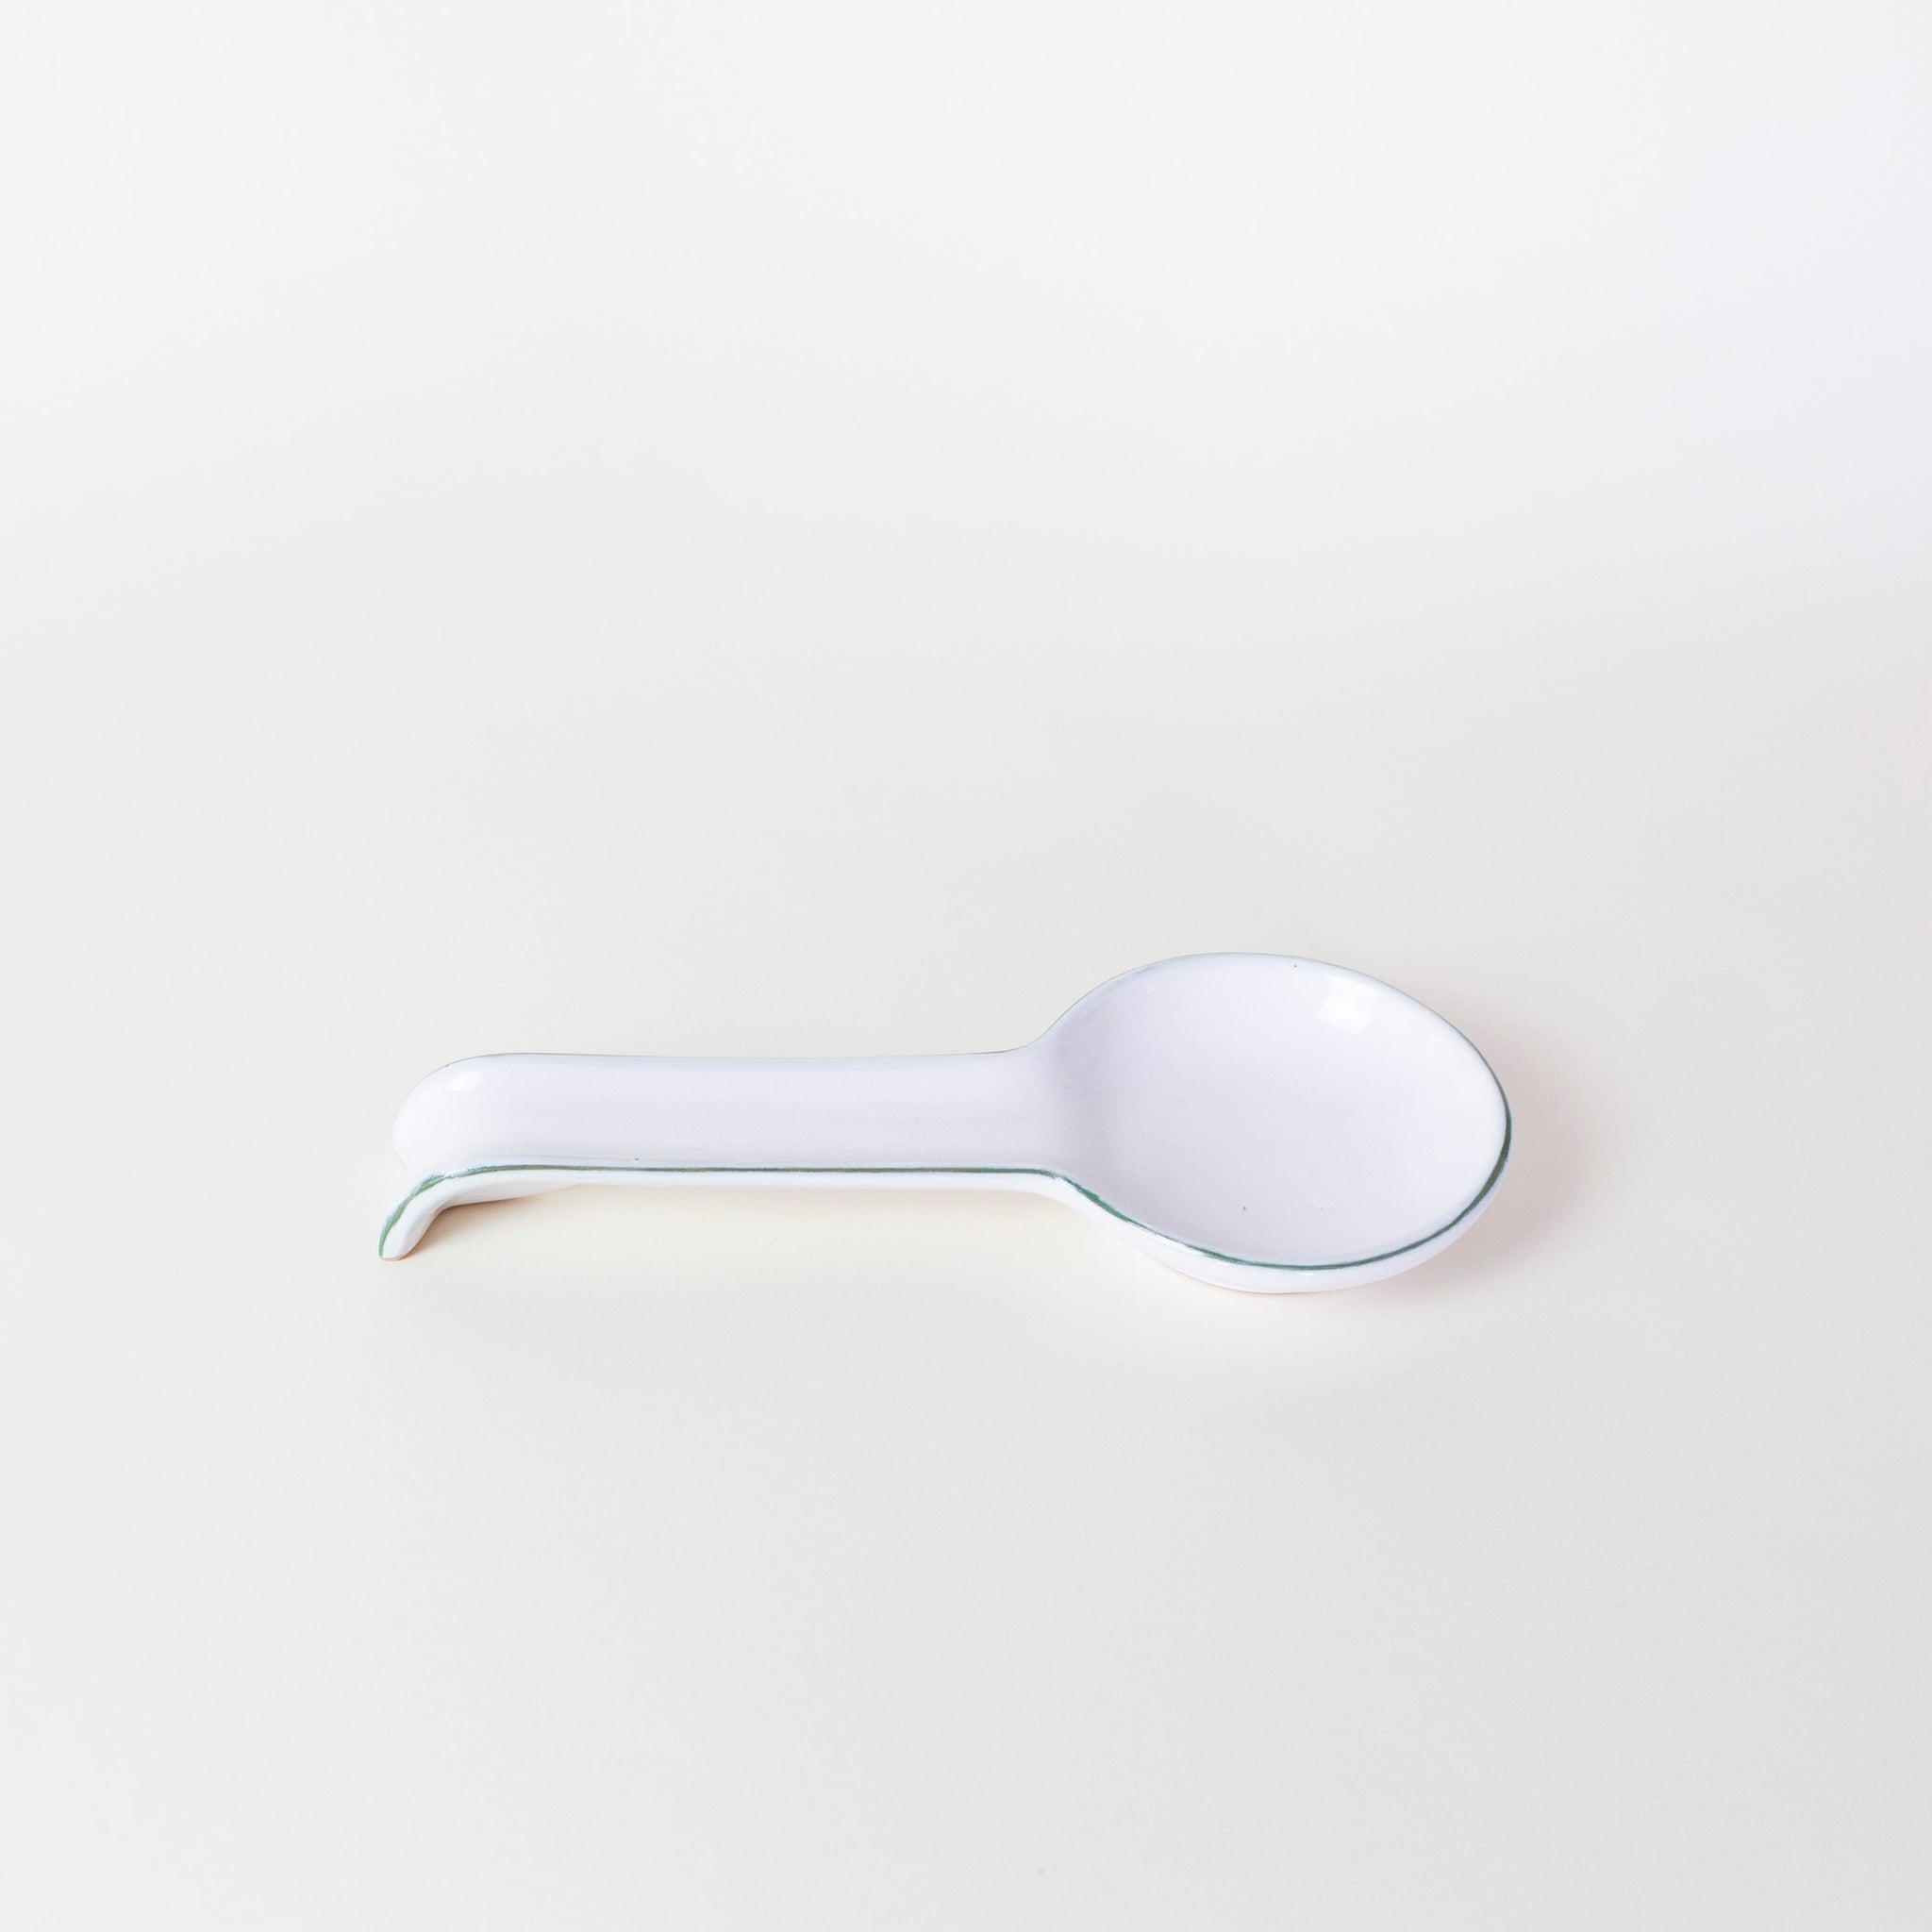 Italian Ceramic Spoon Rest